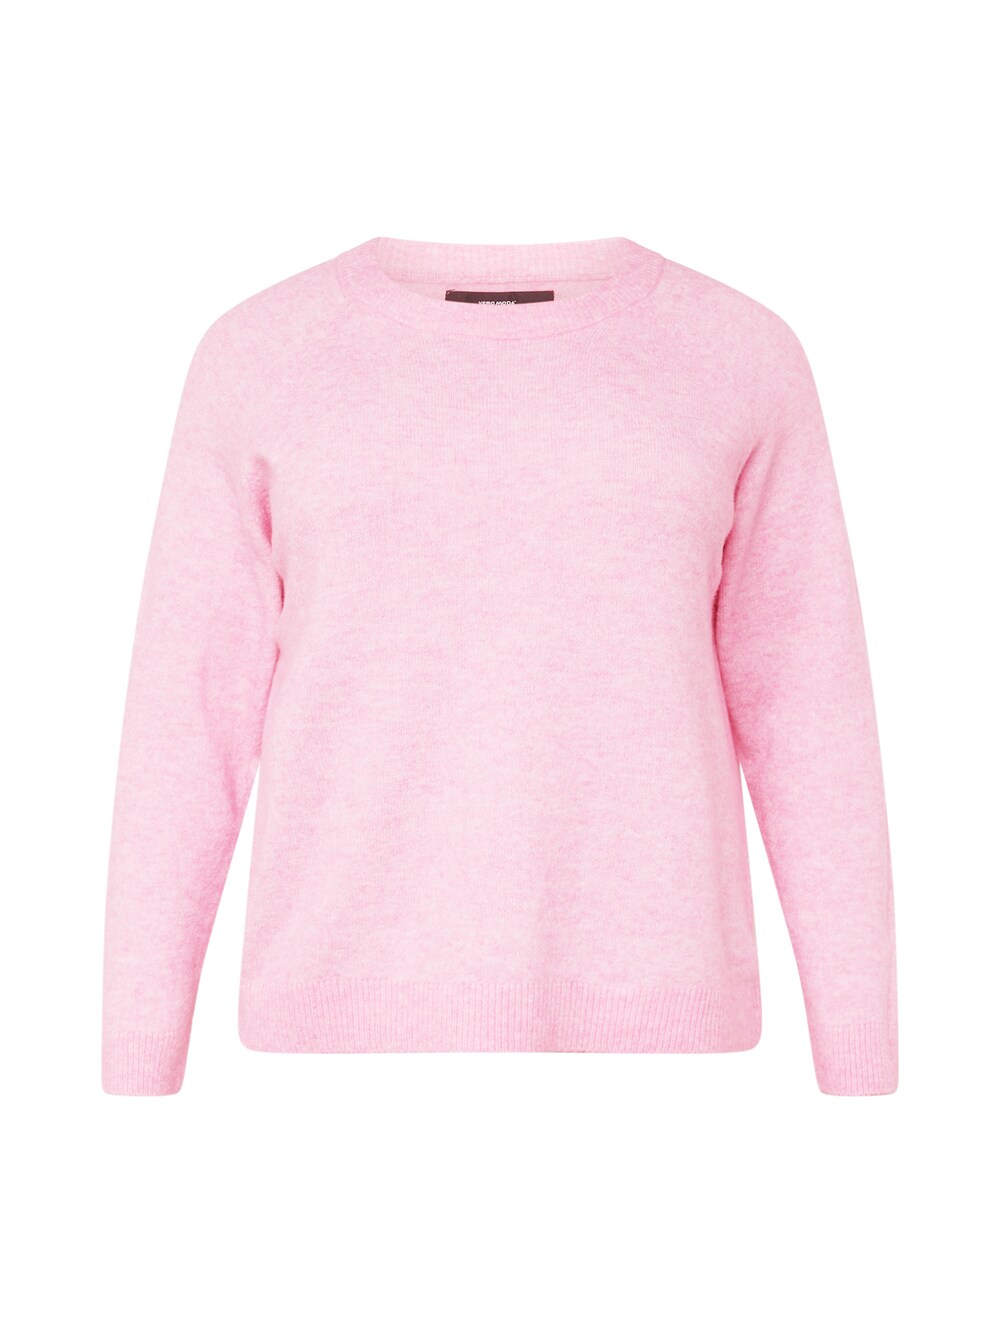 Свитер Vero Moda Curve Filuca, пестрый розовый vero moda куртка женская цвет розовый размер s